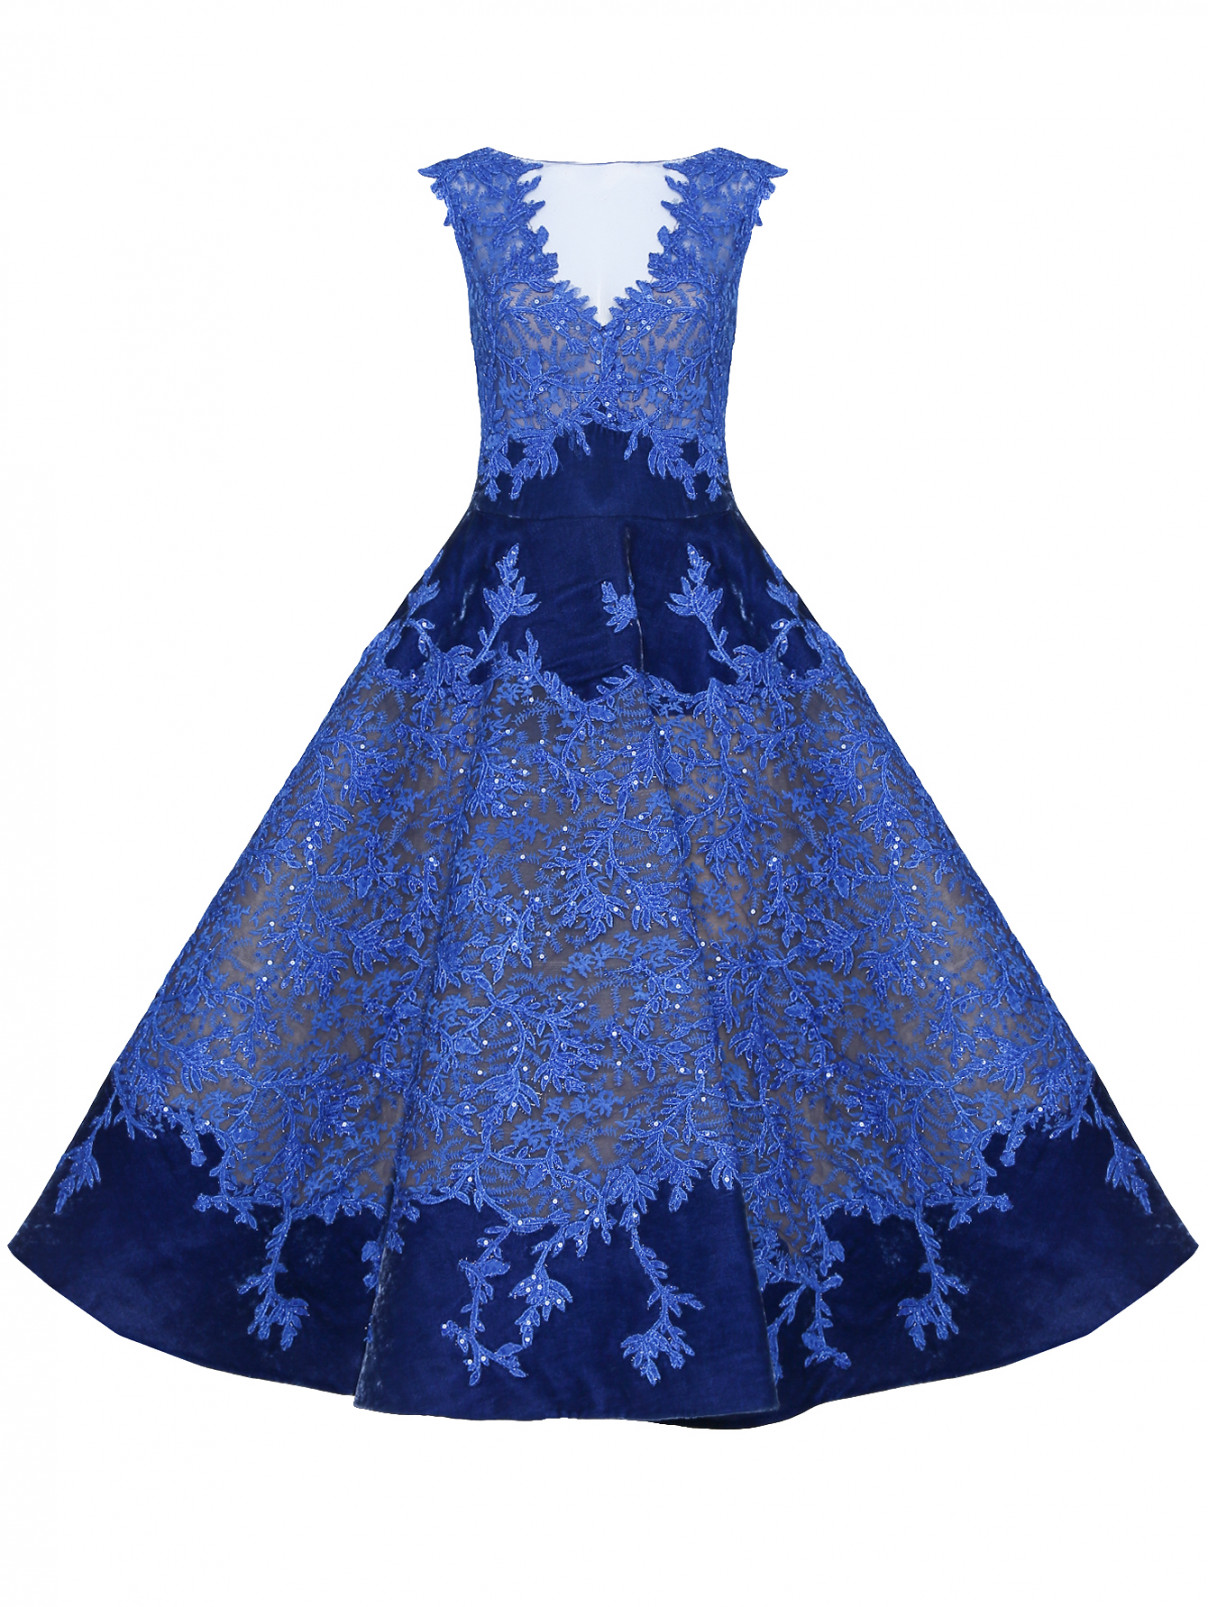 Платье-миди с декоративной вышивкой Tony Ward  –  Общий вид  – Цвет:  Синий